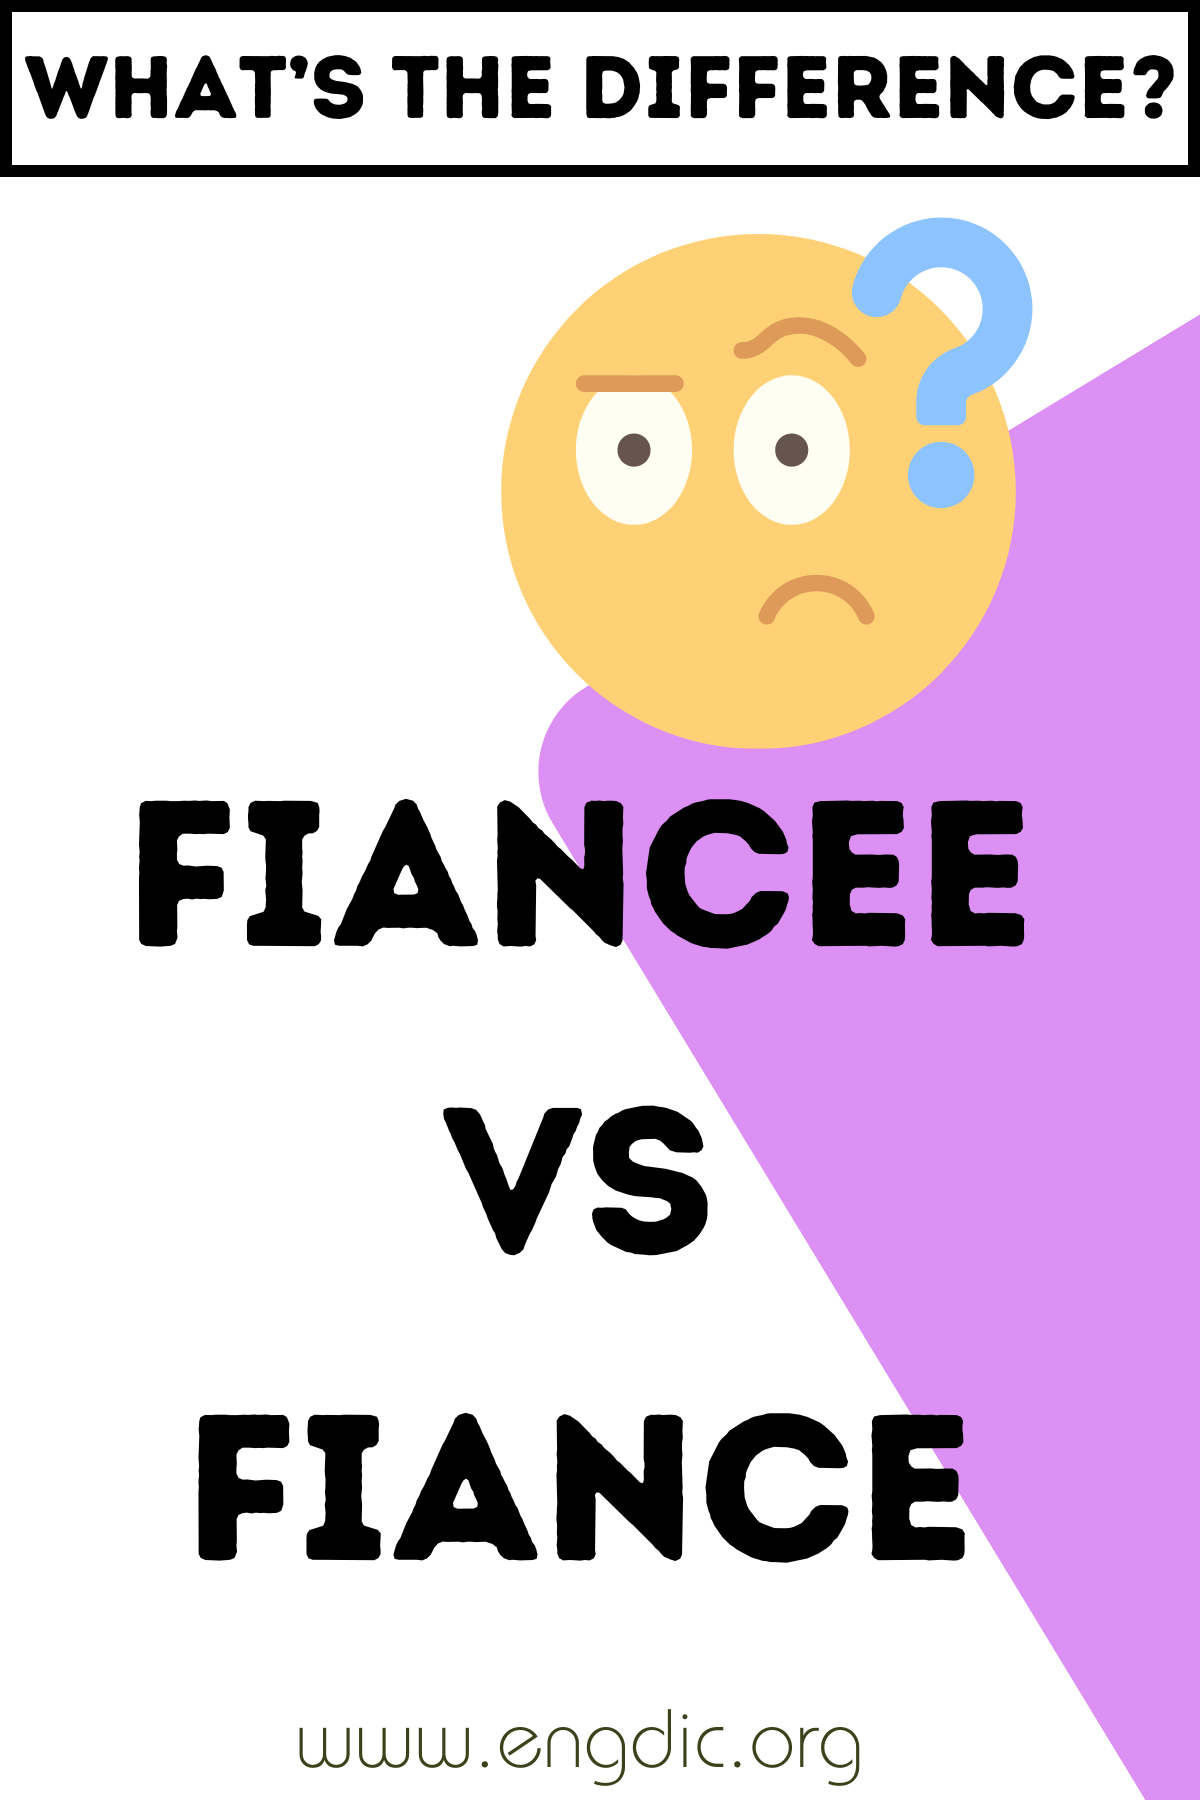 Fiancee vs Fiance